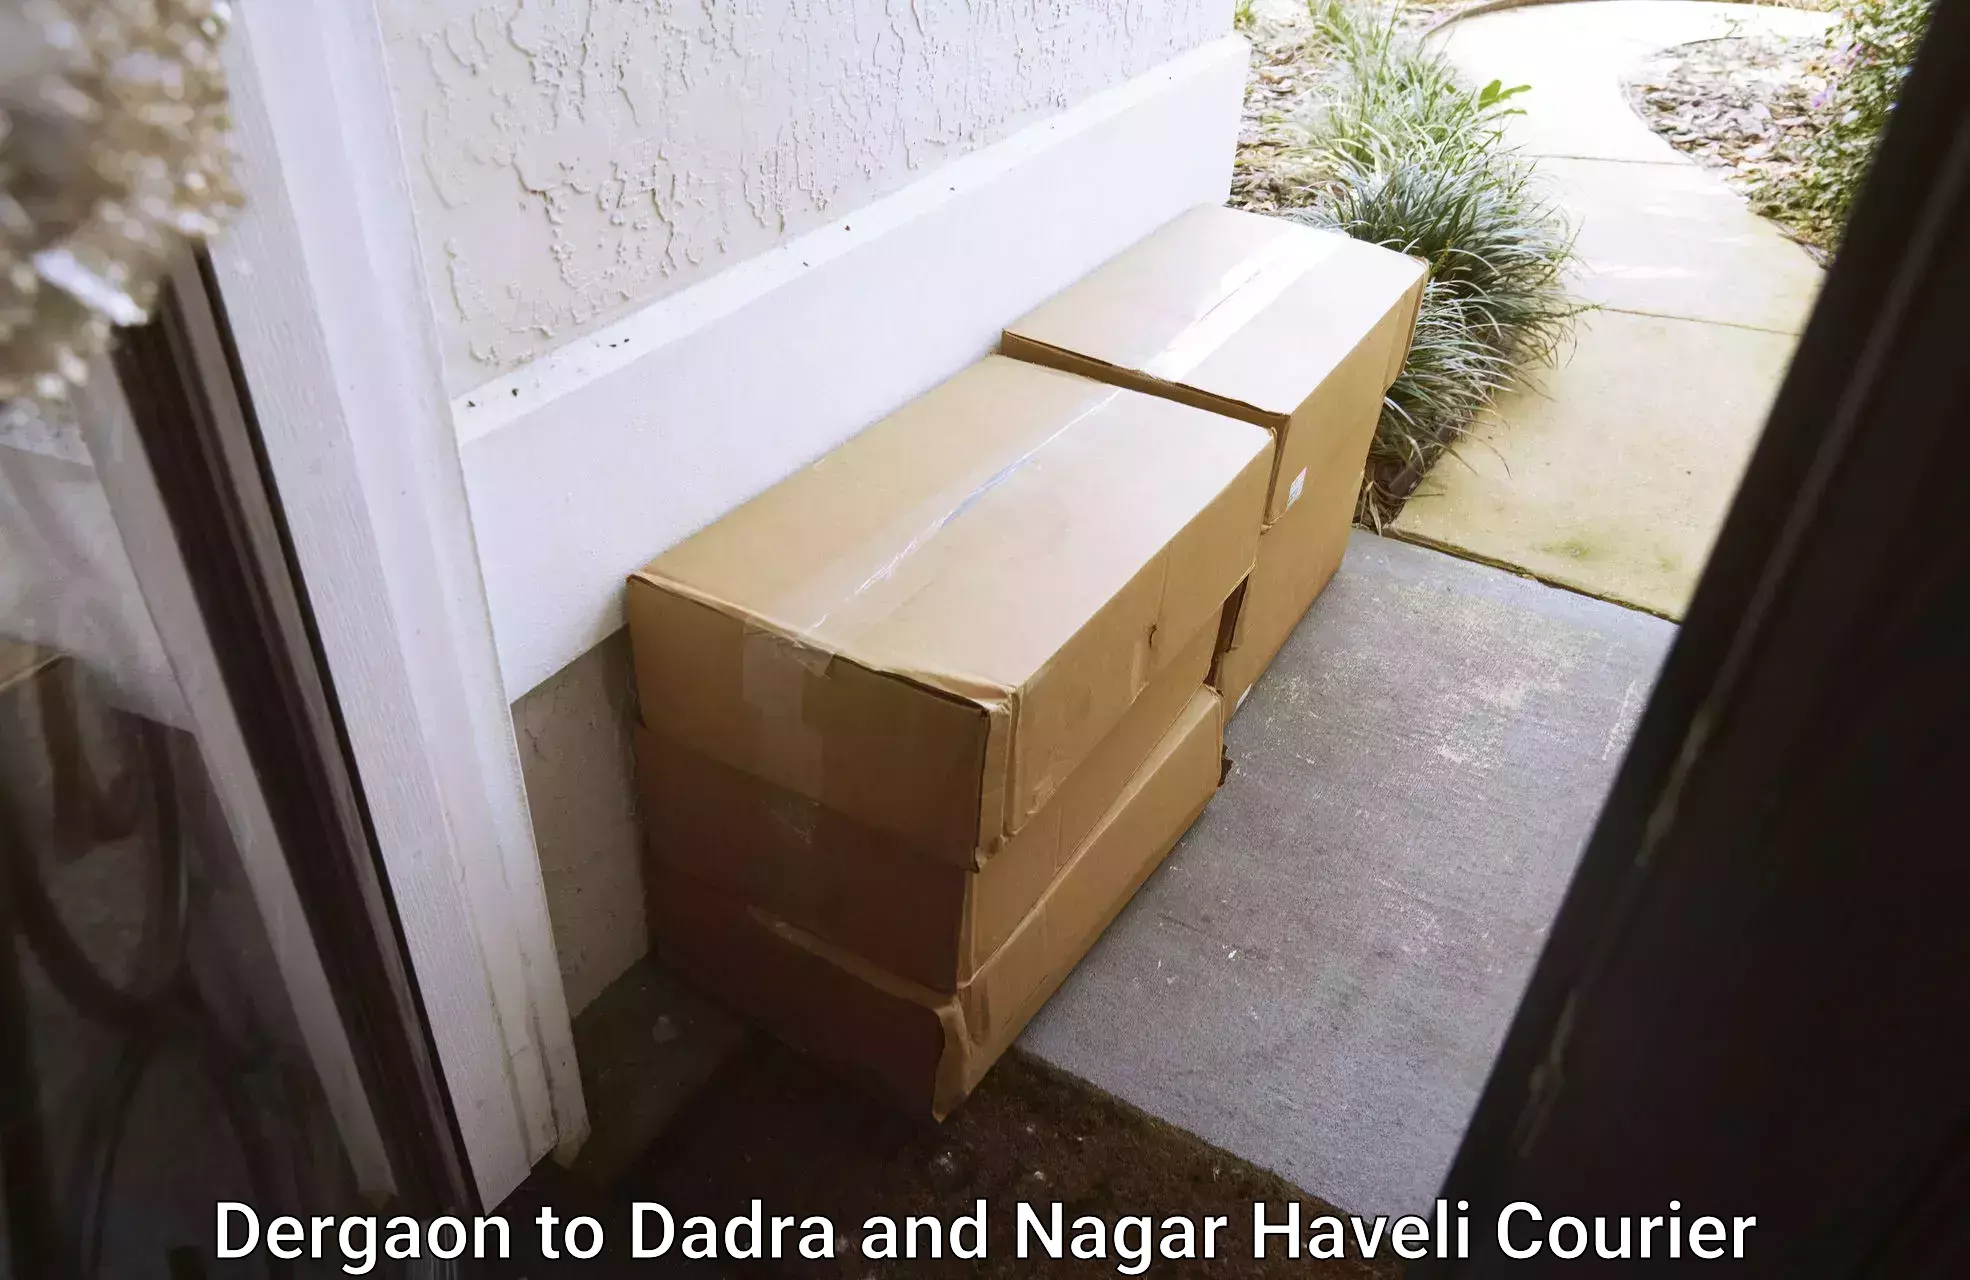 High-priority parcel service Dergaon to Silvassa